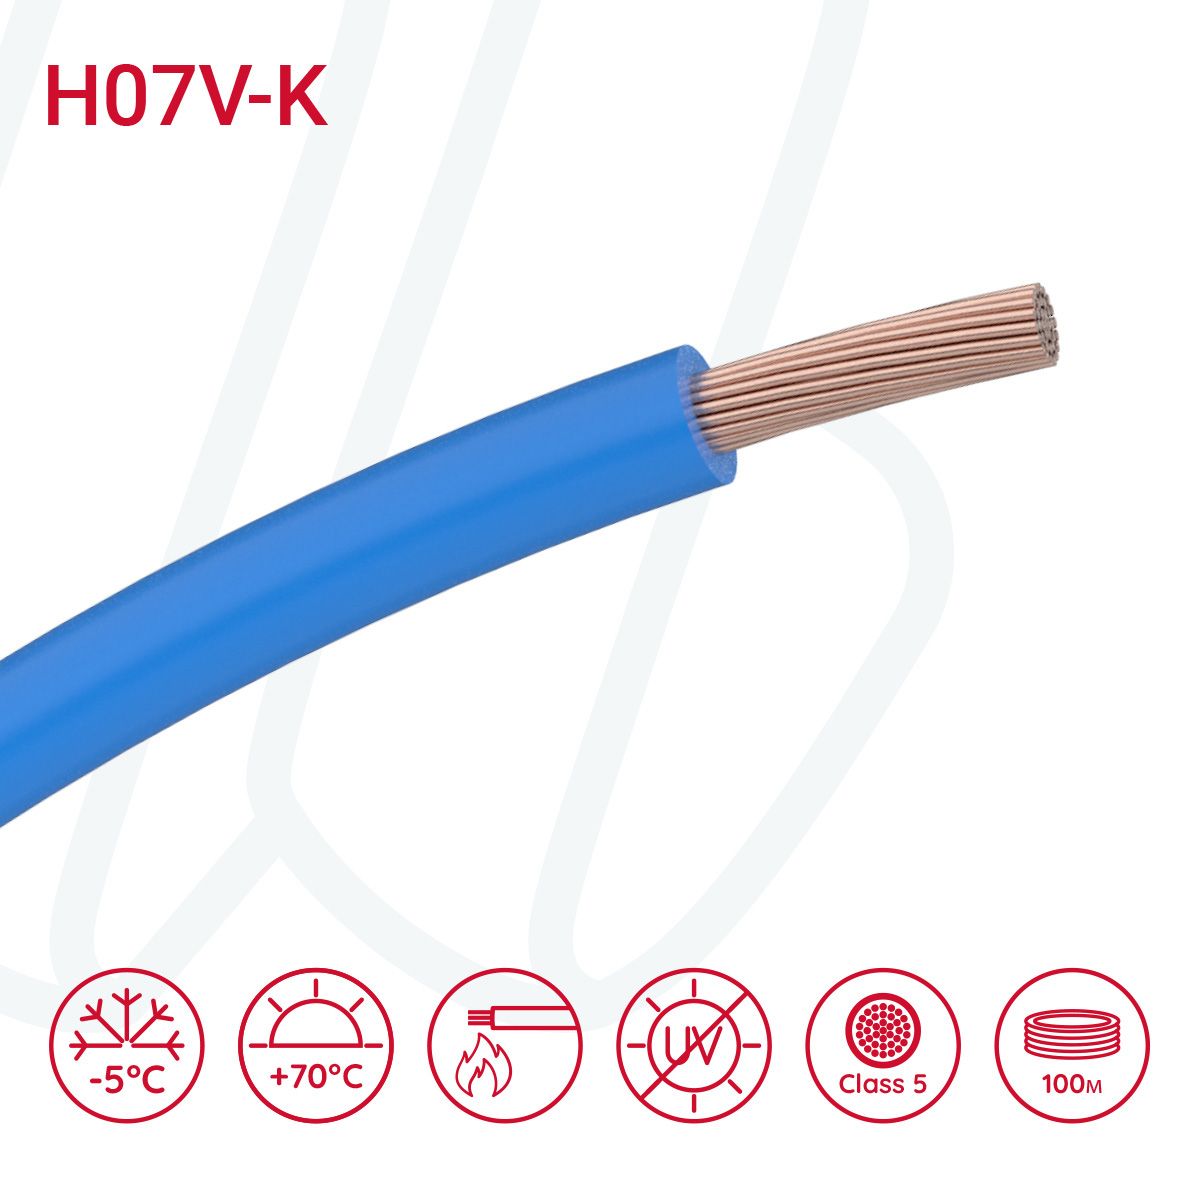 Провід монтажний гнучкий H07V-K 6 мм² блакитний, 01, 6